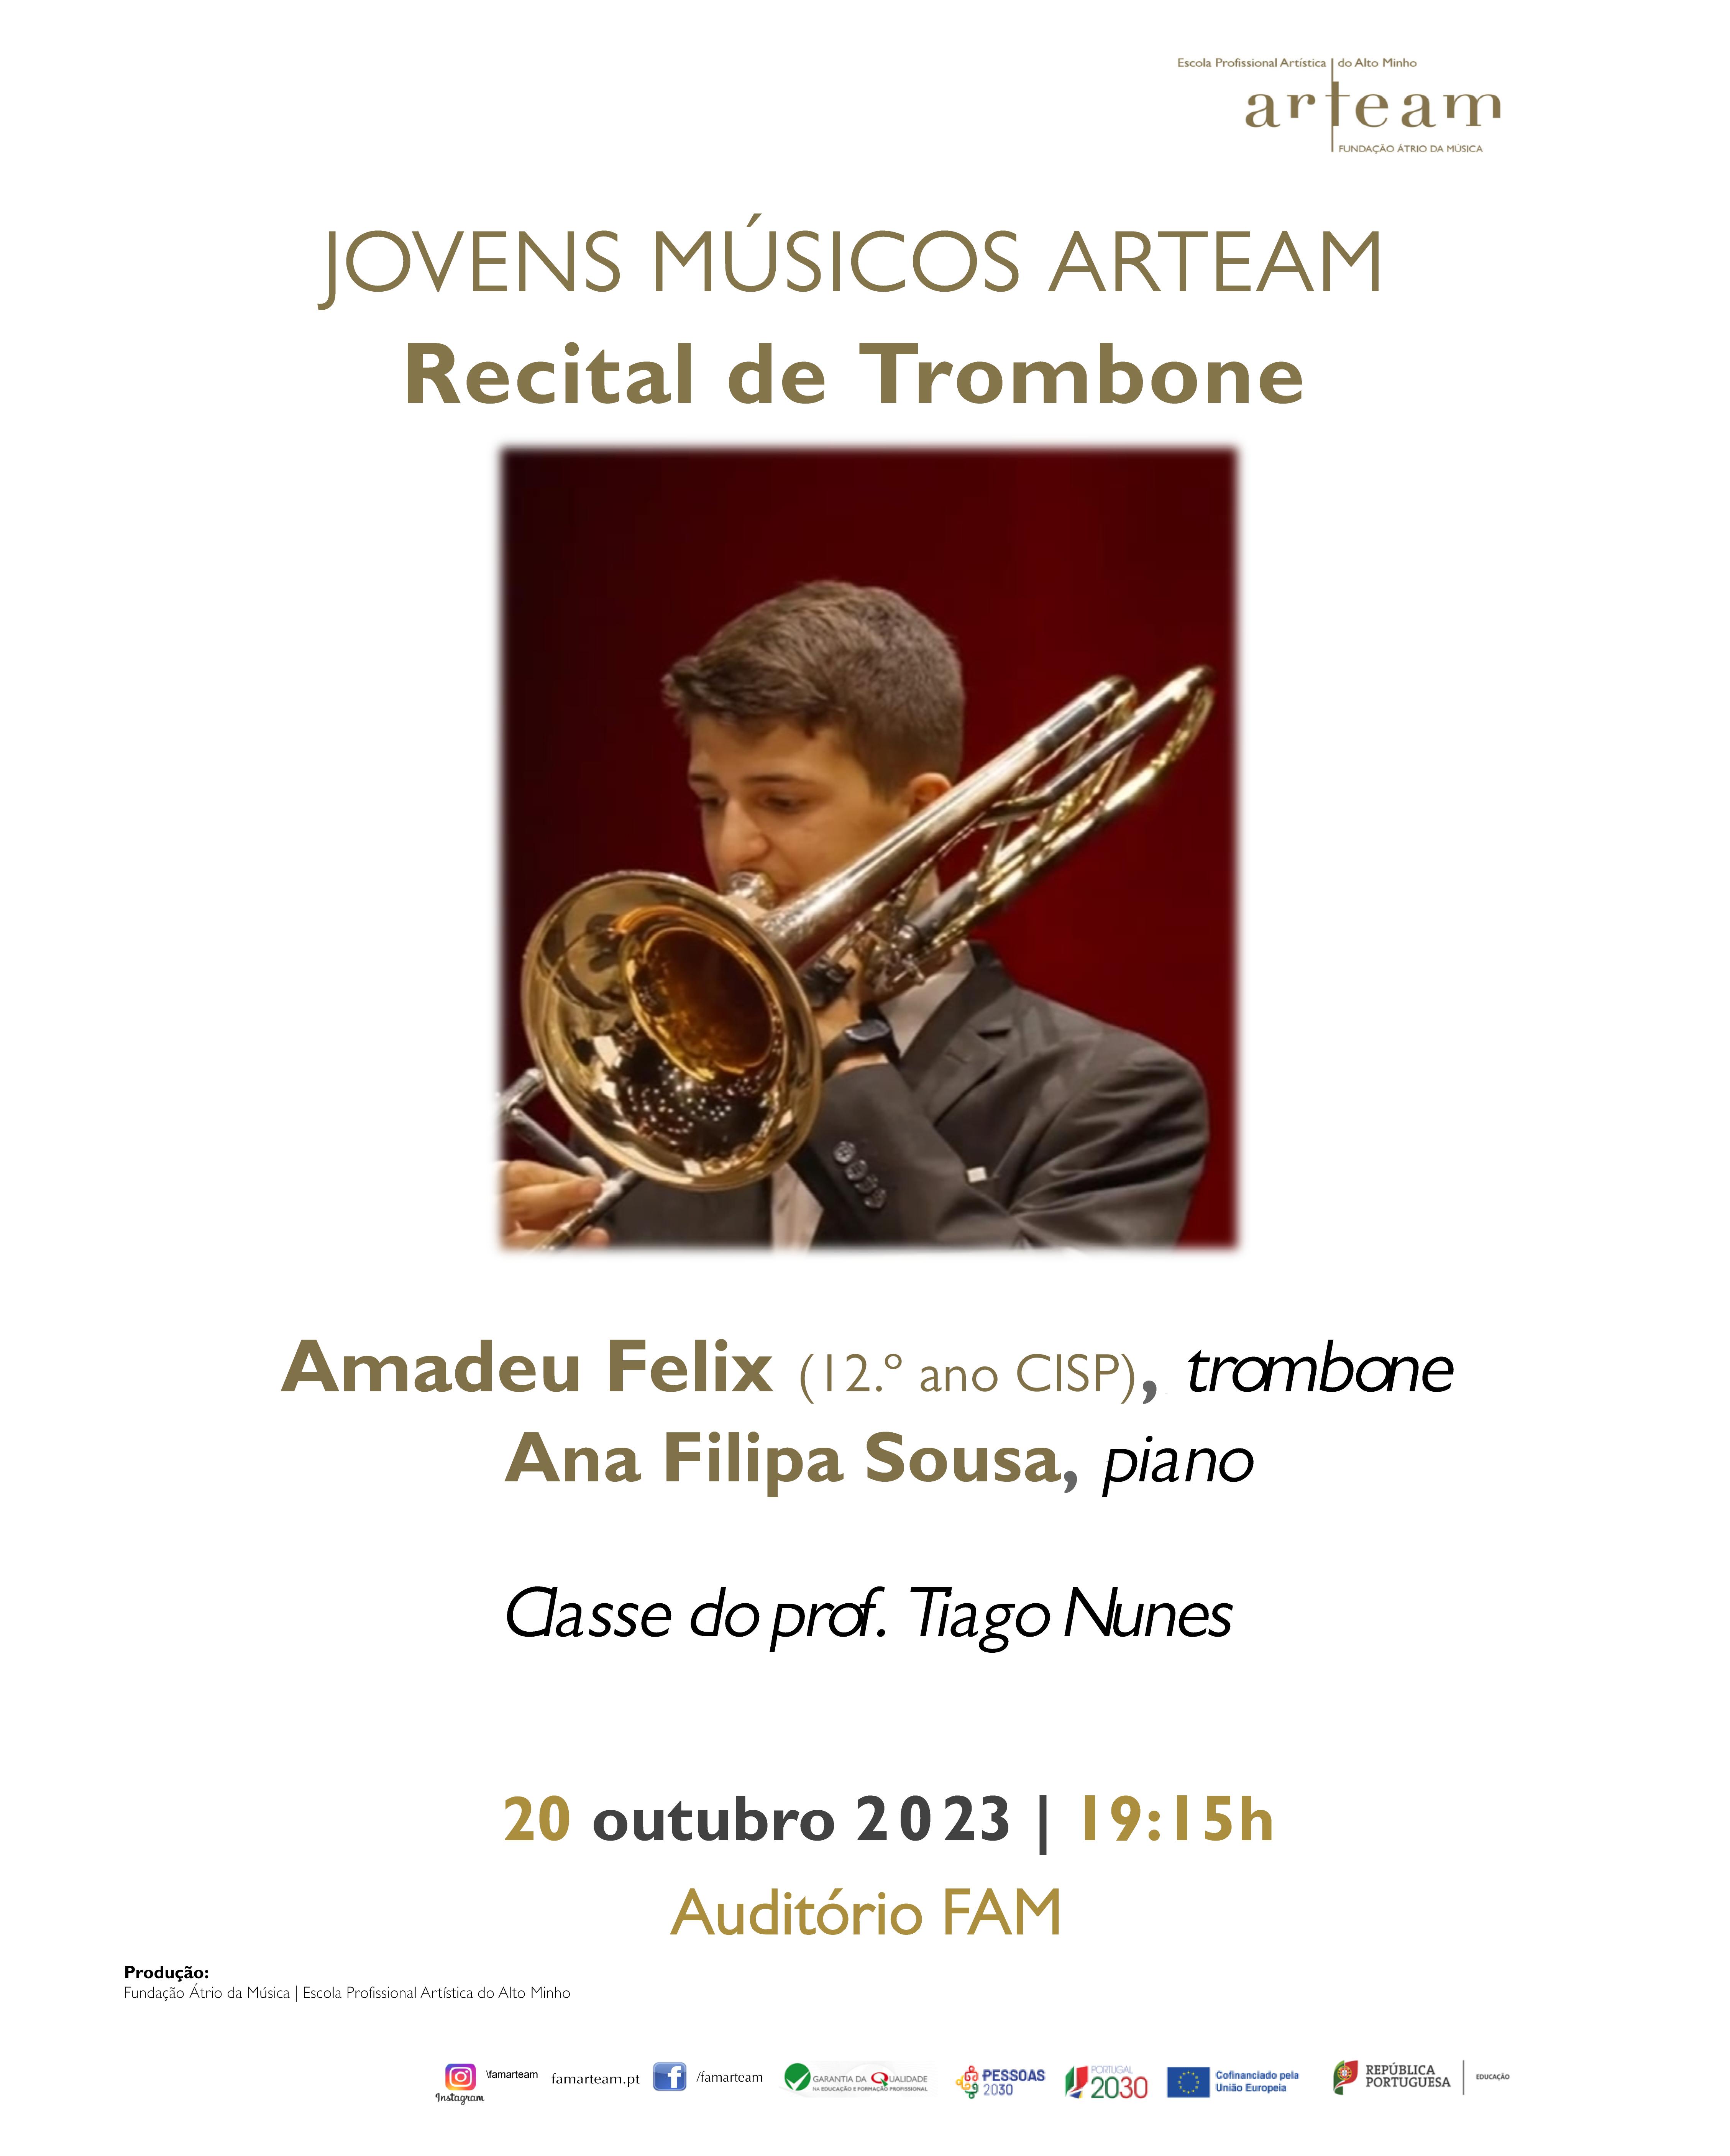  Recital de trombone – Amadeu Félix apresenta-se em Viana do Castelo e em Viena de Áustria!